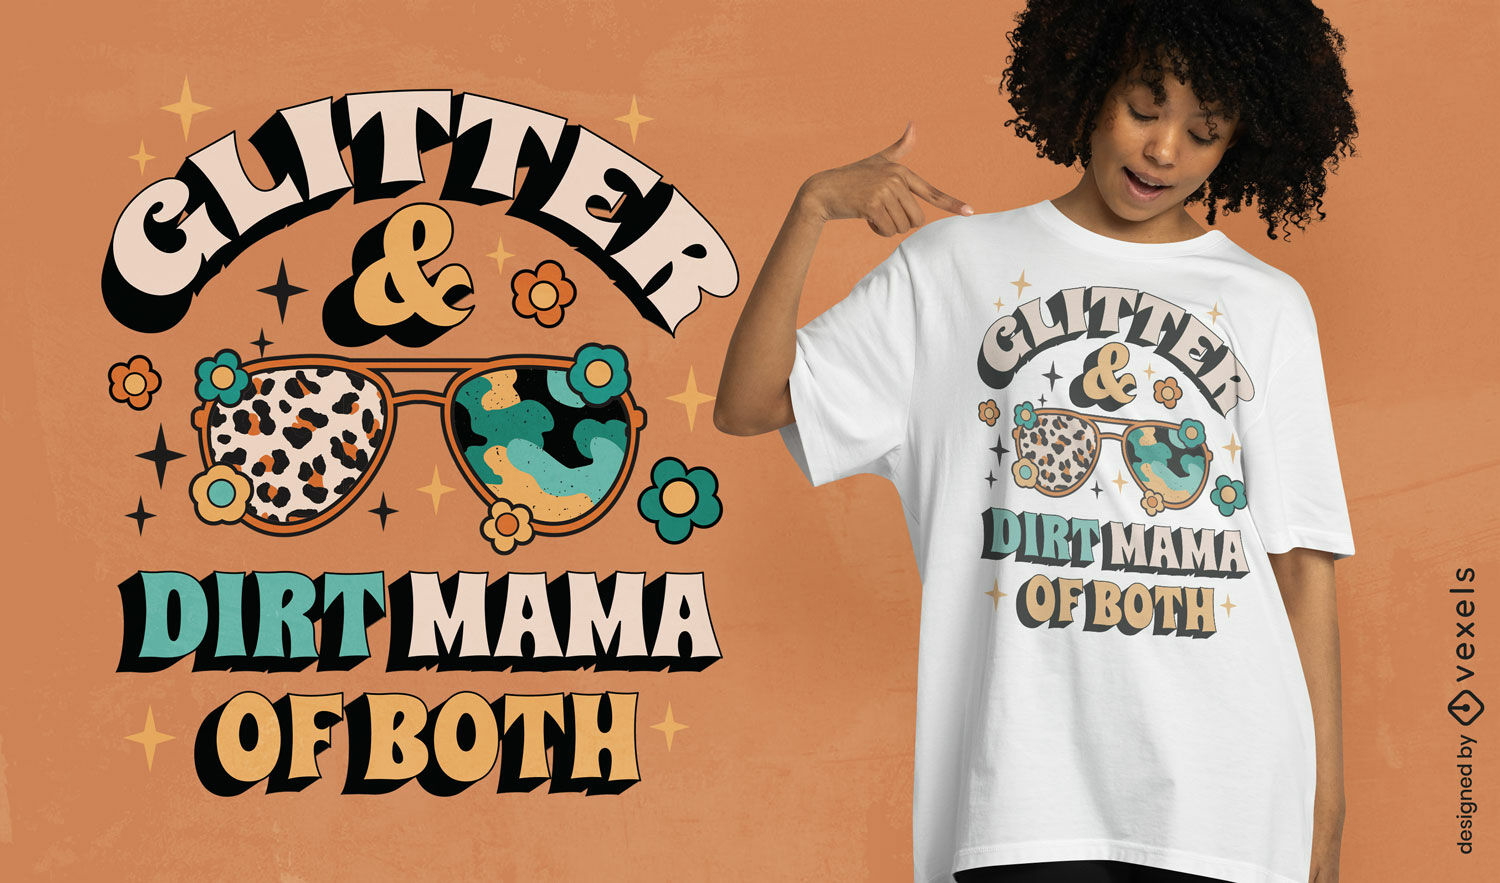 Glitter e sujeira mamãe em ambos os designs de camisetas